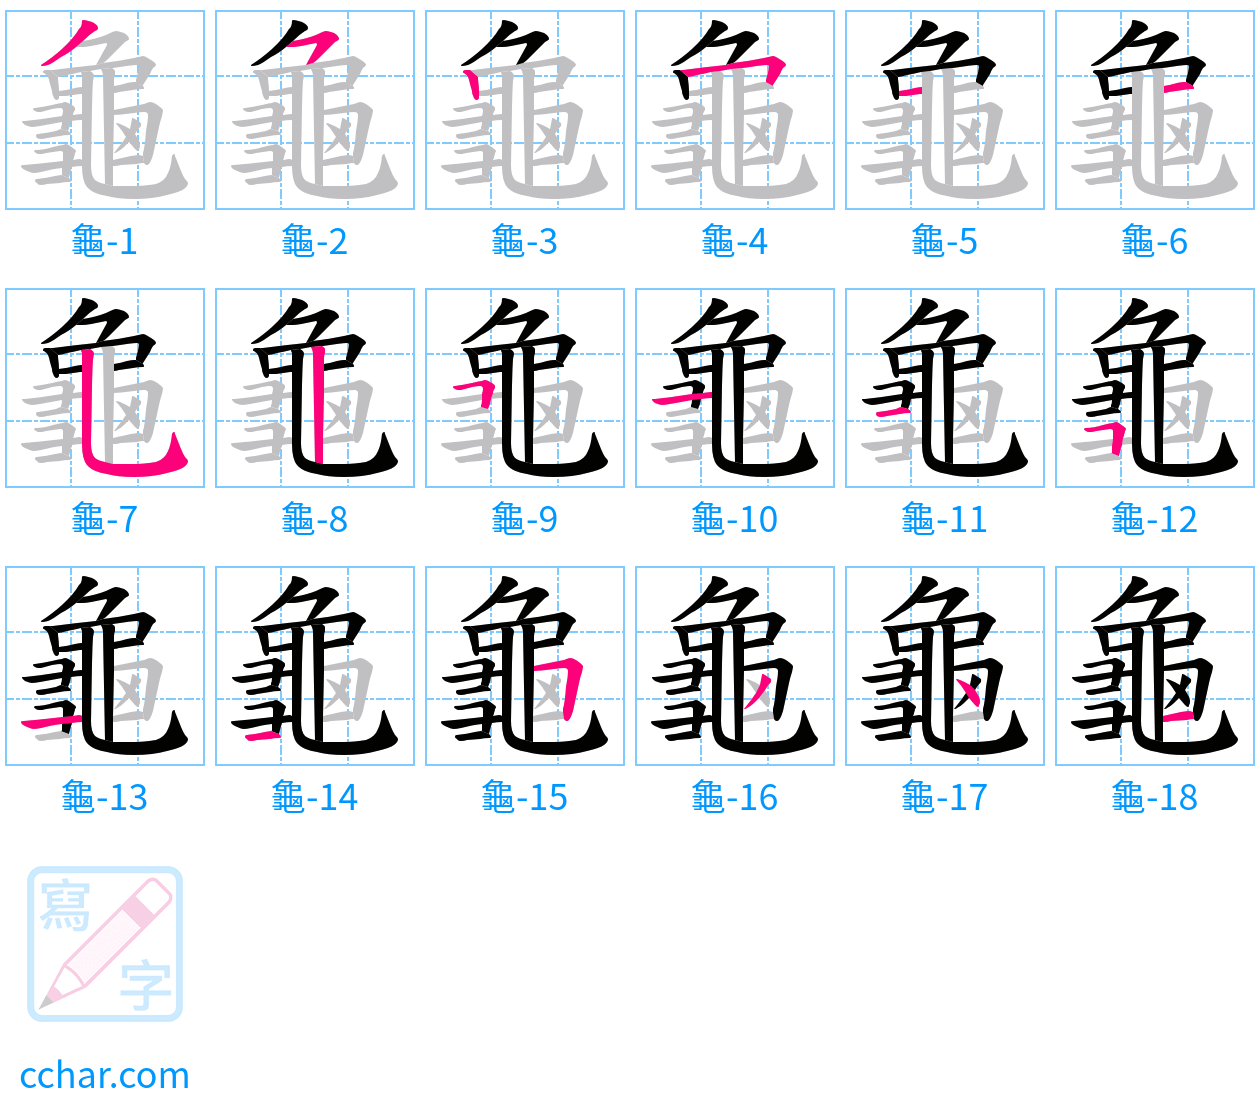 龜 stroke order step-by-step diagram